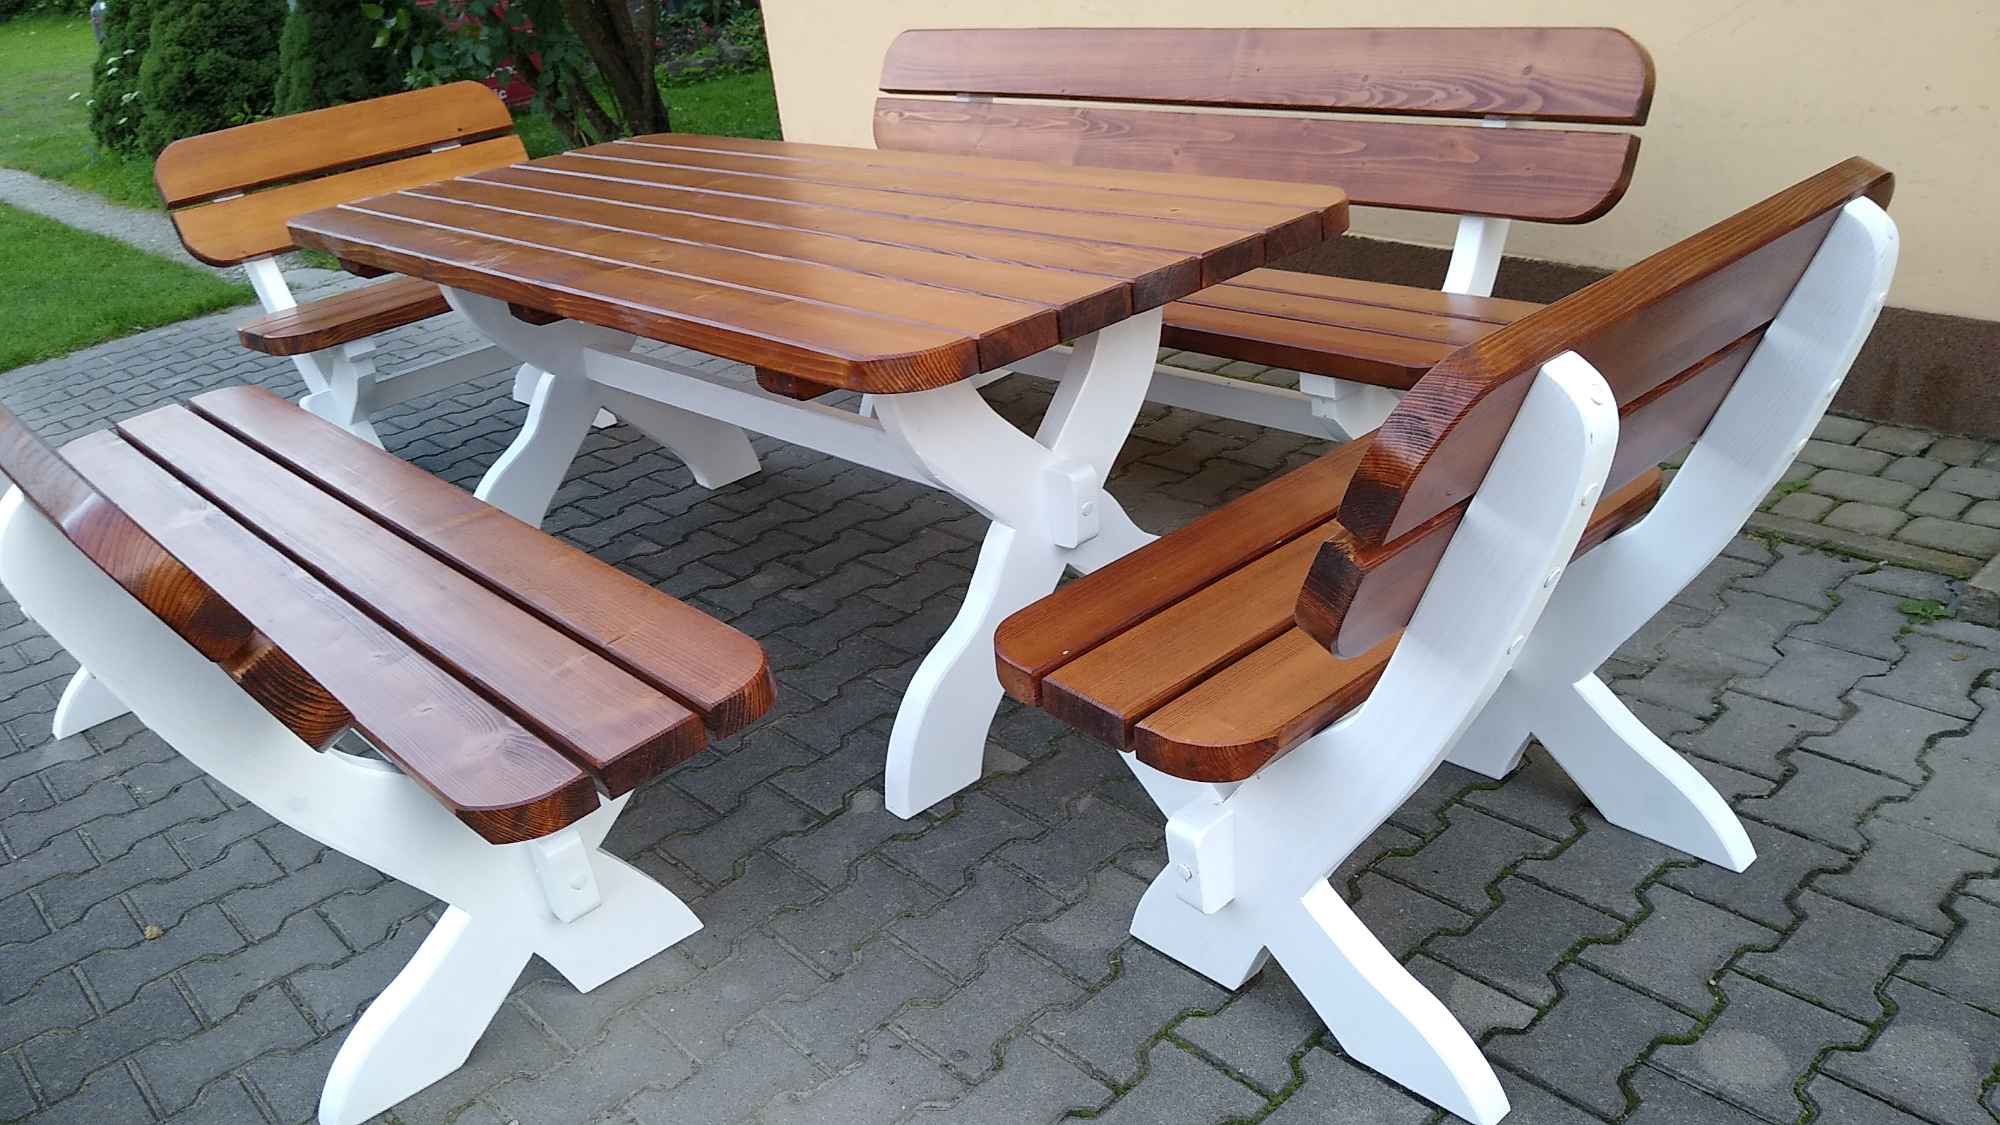 Stół ogrodowy drewniany z ławkami i fotelami Tokarnia - zdjęcie 4